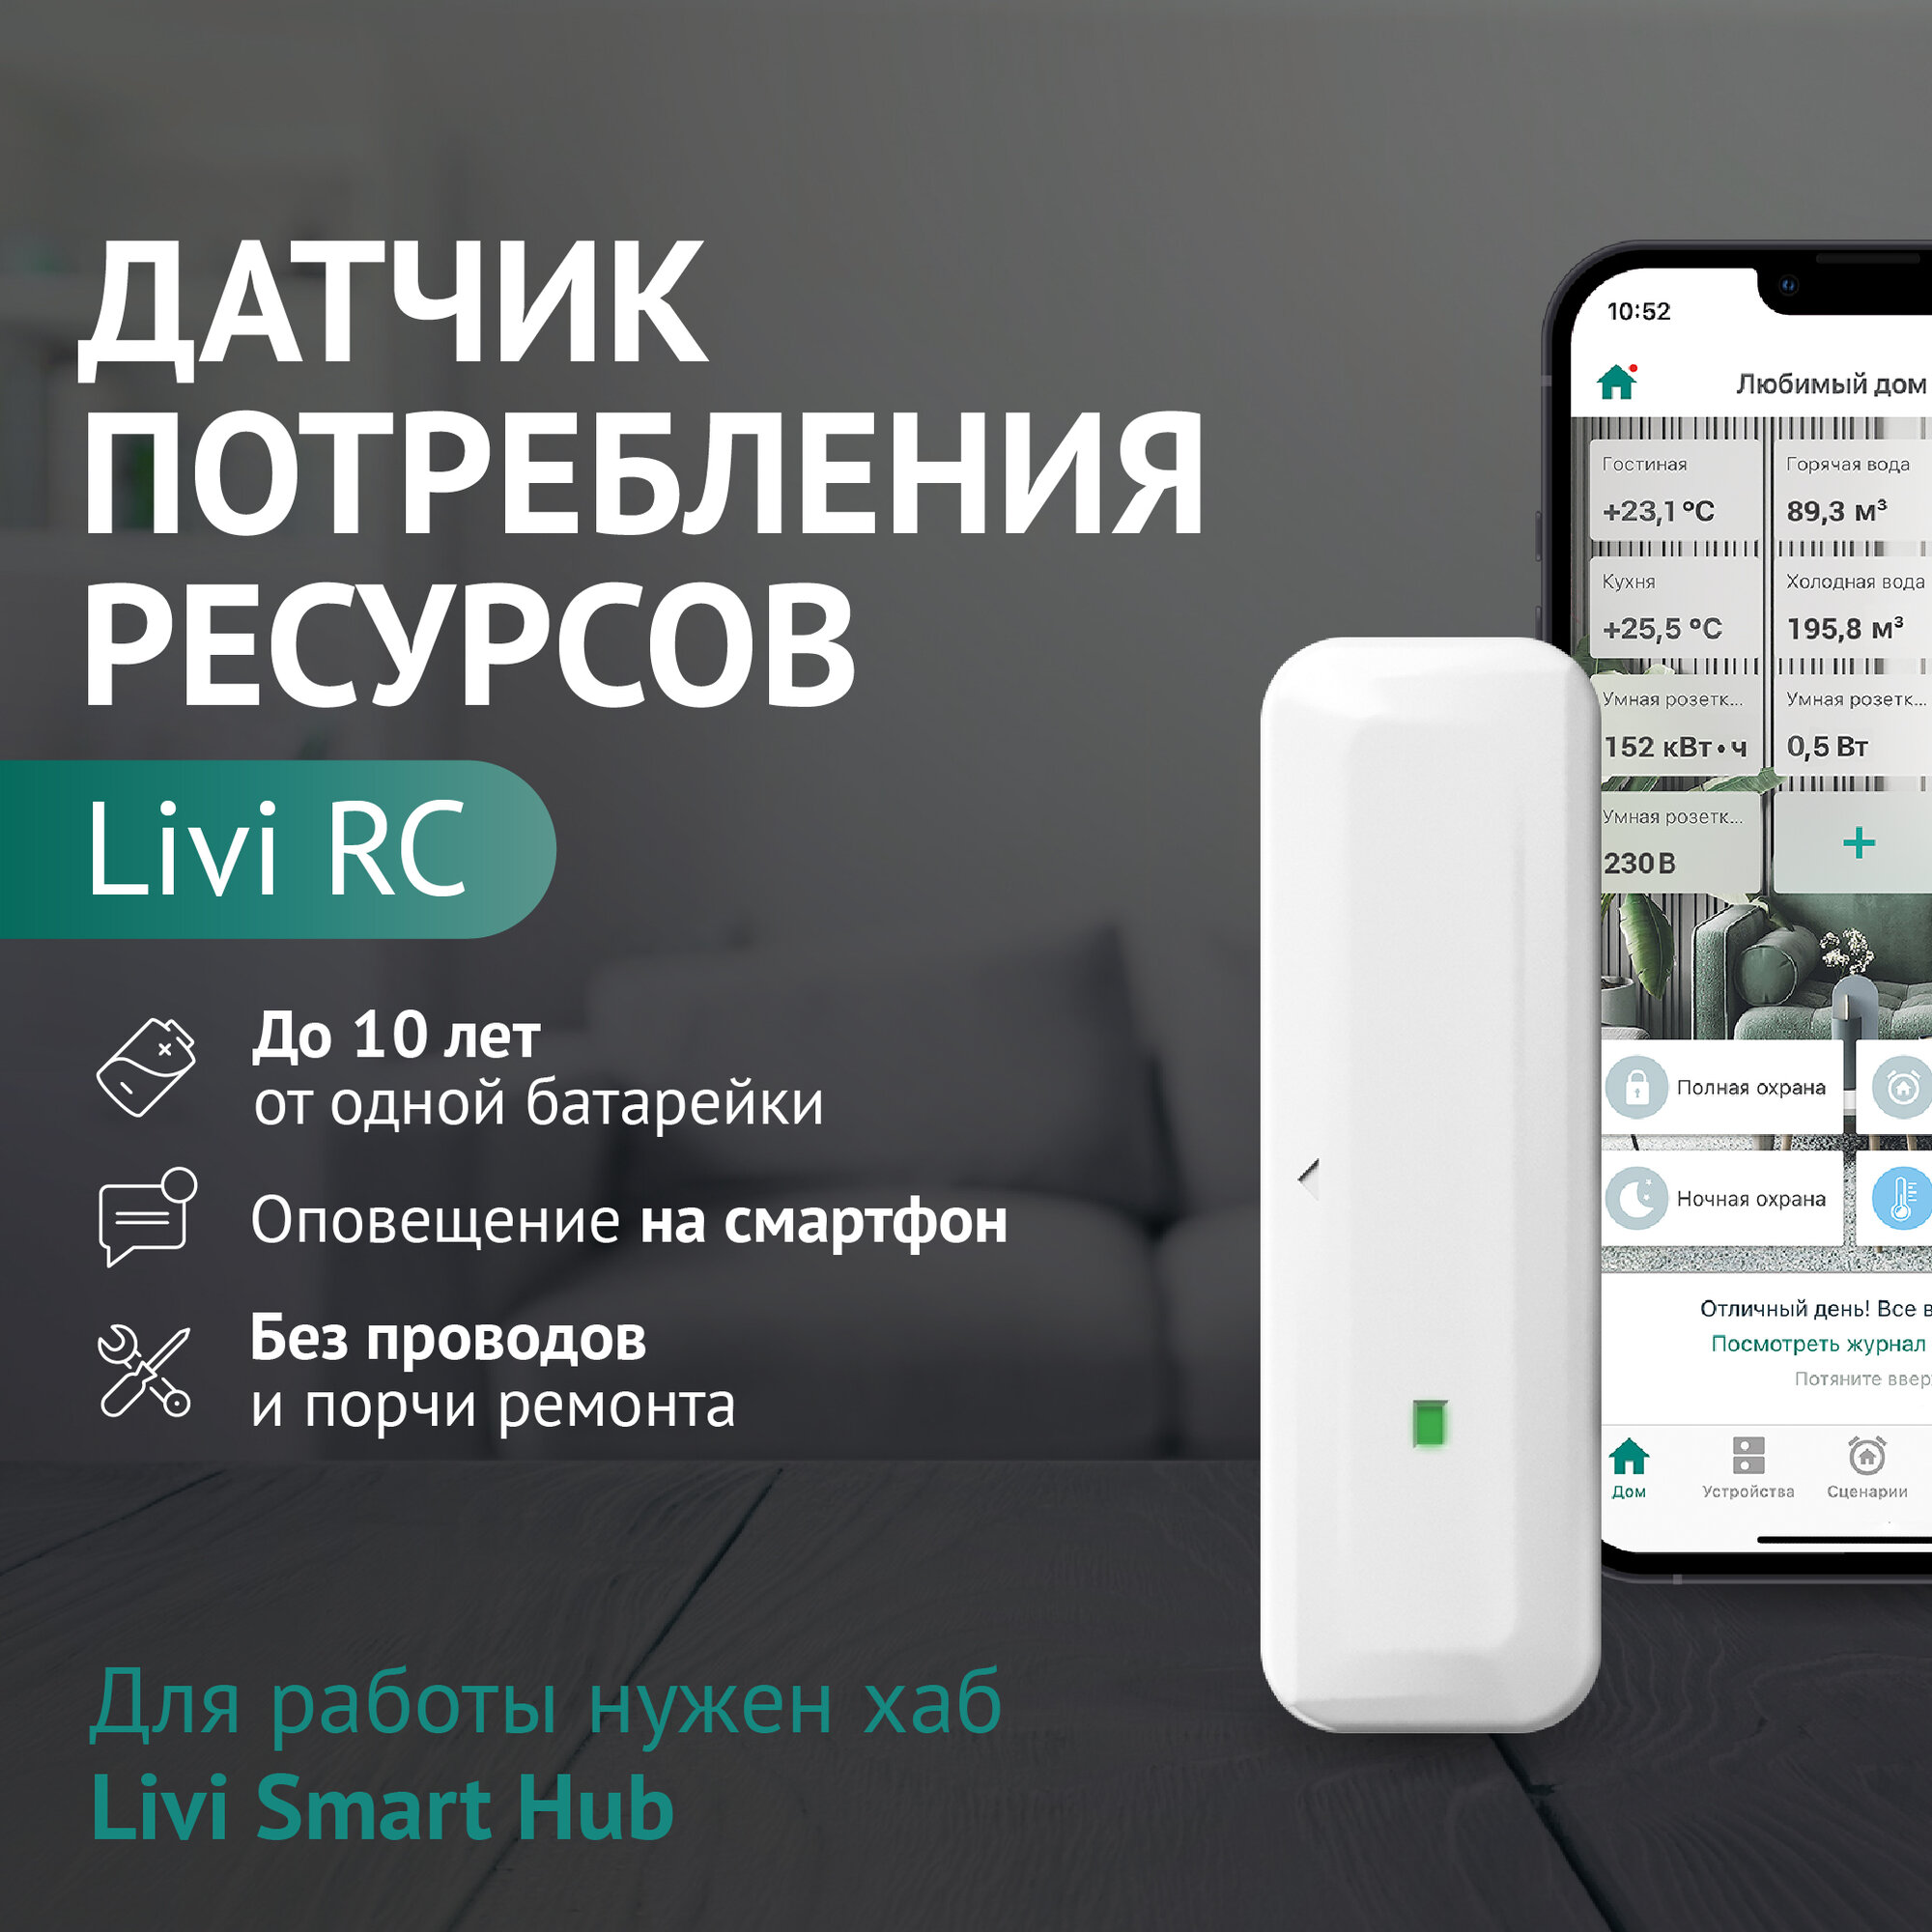 Беспроводной датчик потребления ресурсов Livicom Livi RC